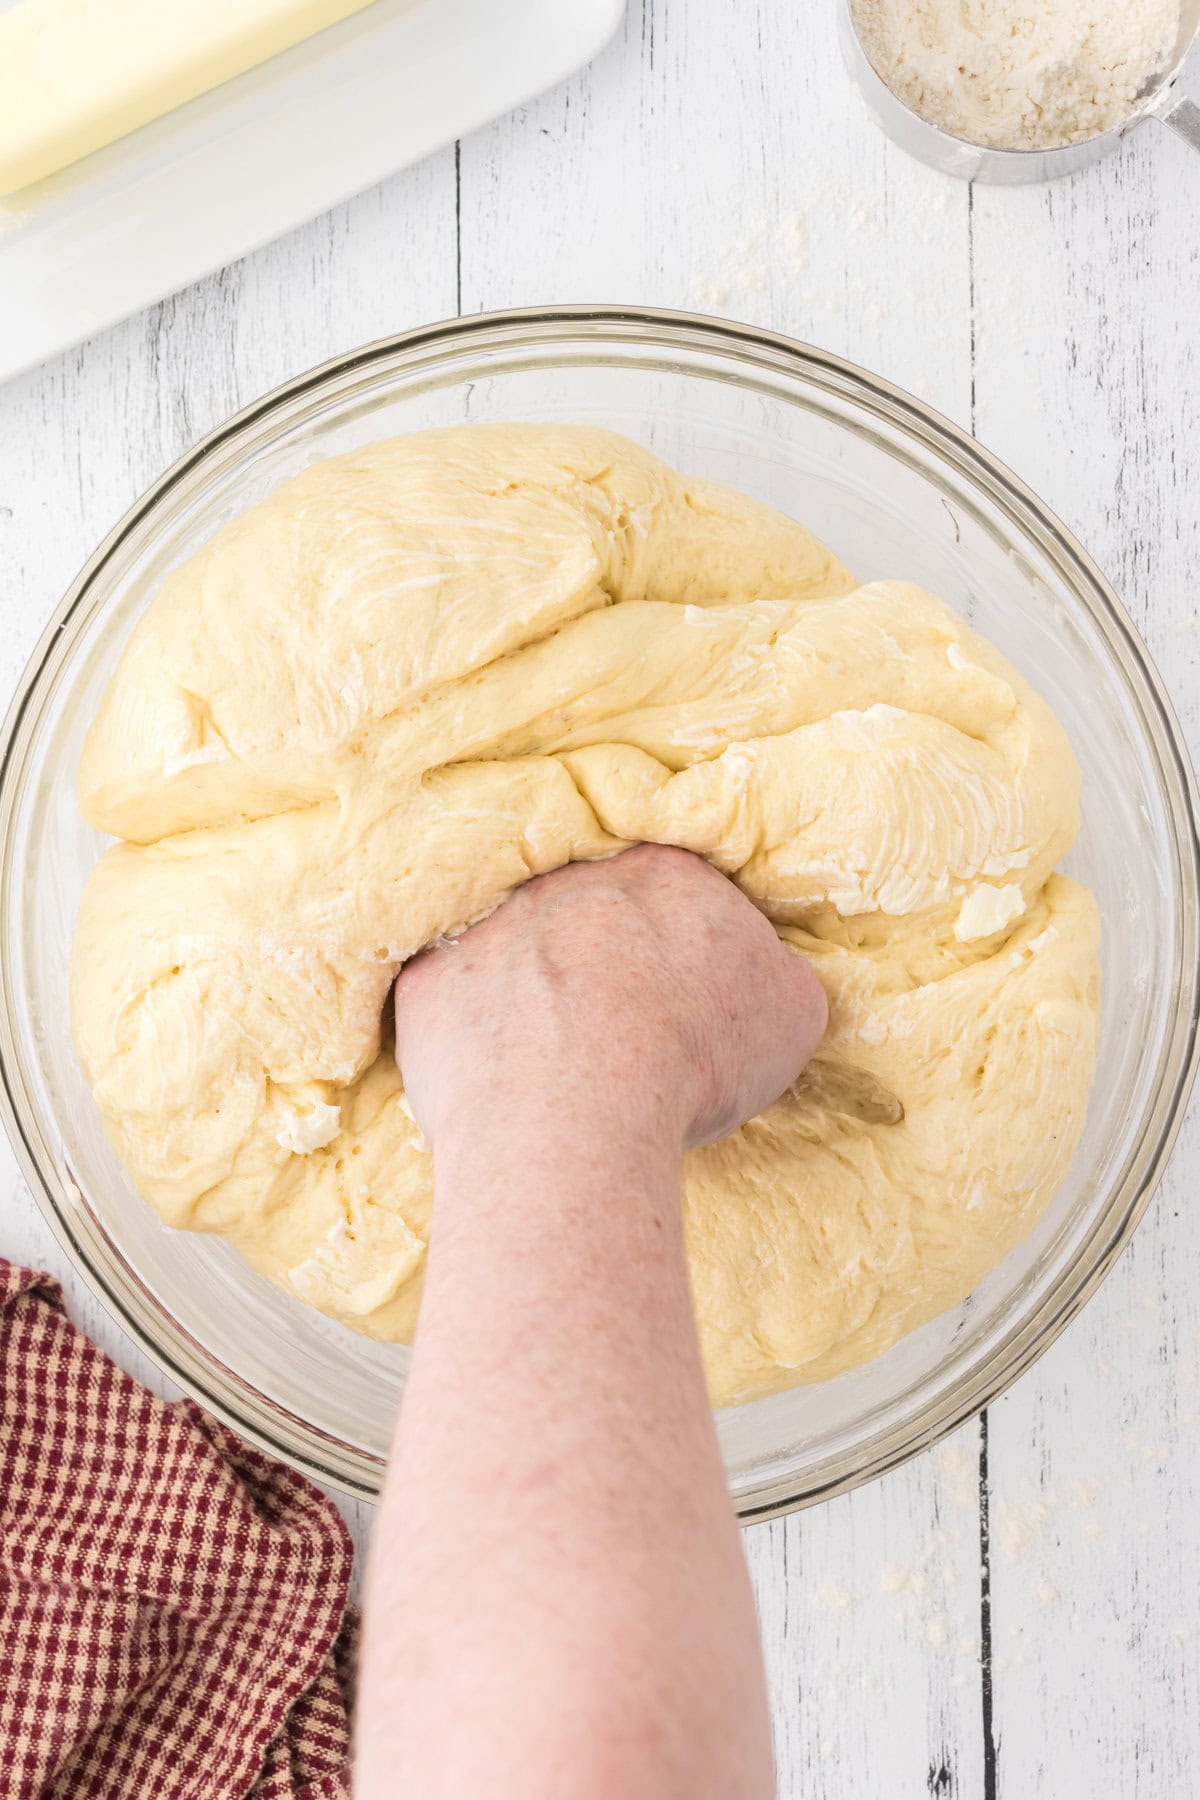 A hand punching down risen dough.